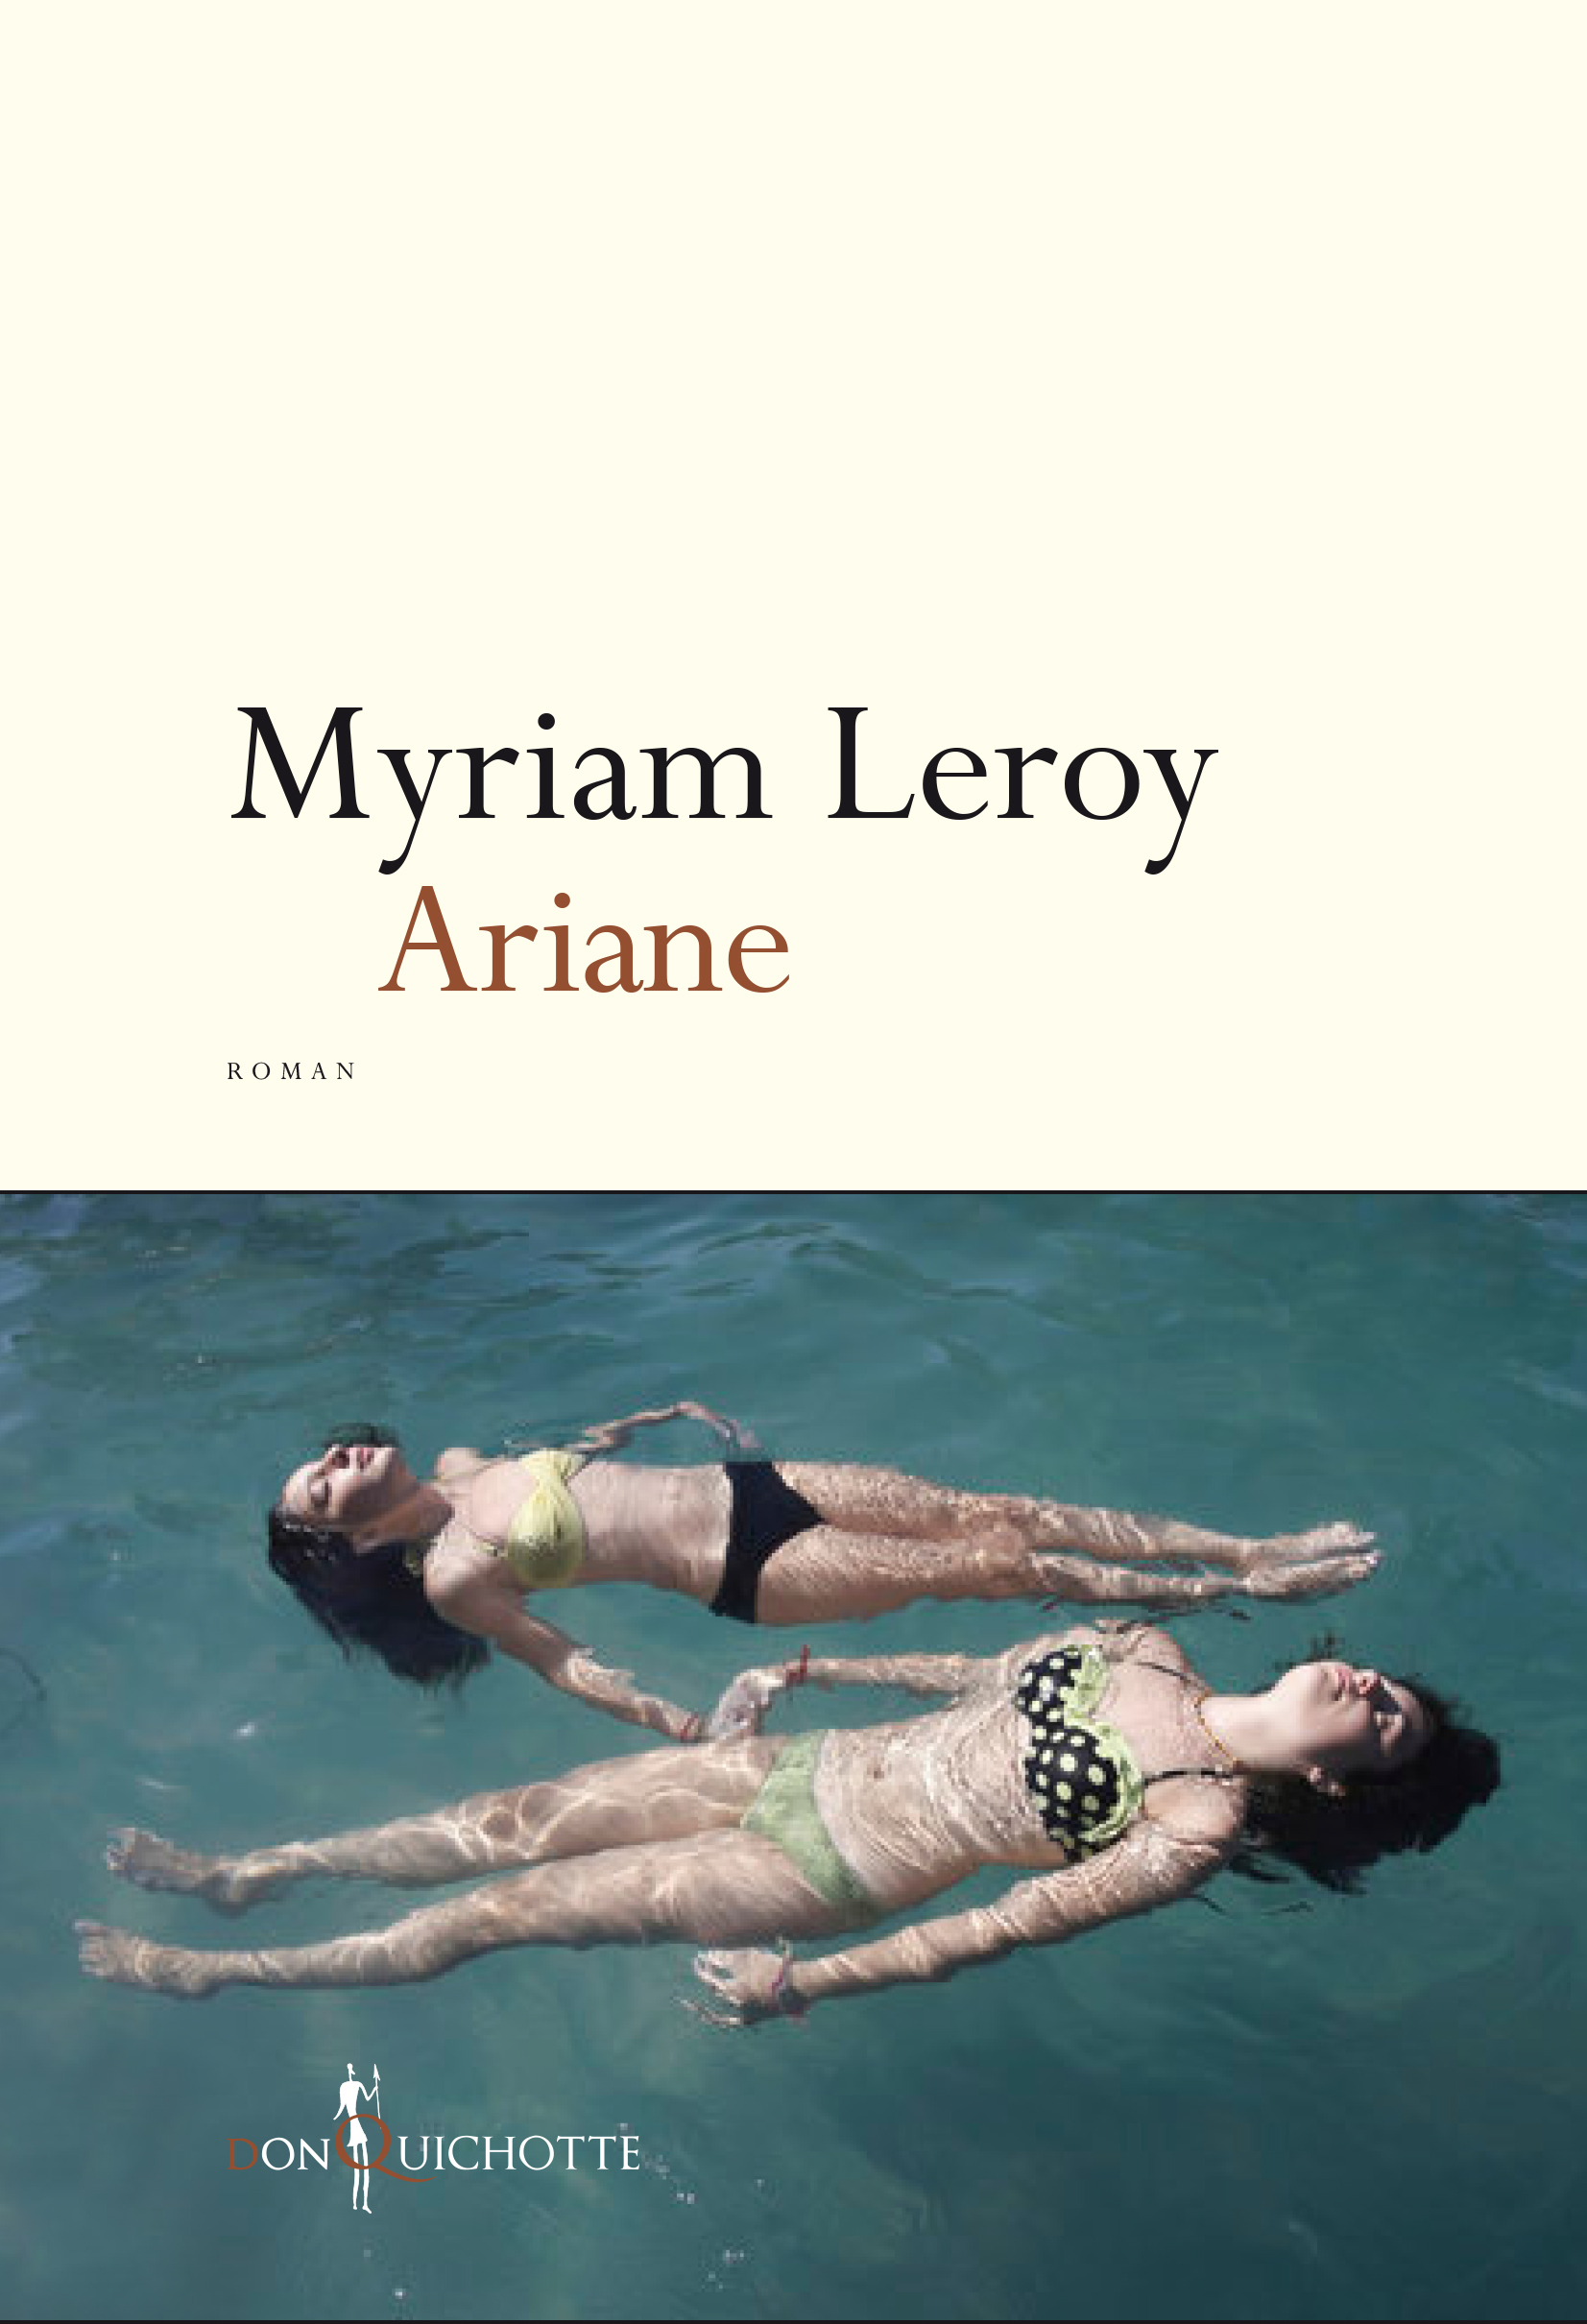 myriam leroy ariane